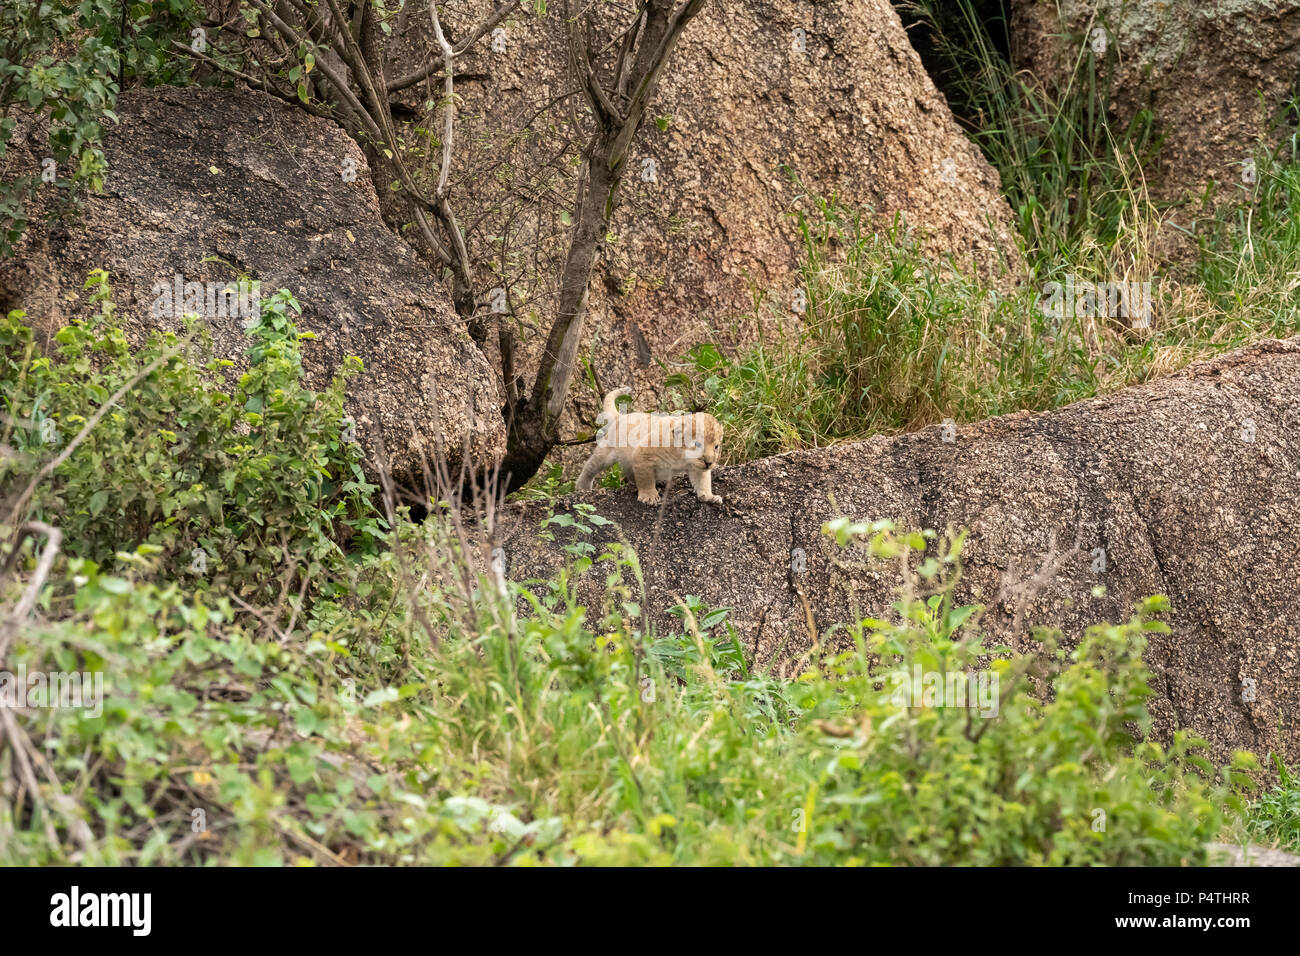 Très petit African Lion cub (Panthera leo) jouant sur une colline dans le Parc National du Serengeti, Tanzanie Banque D'Images